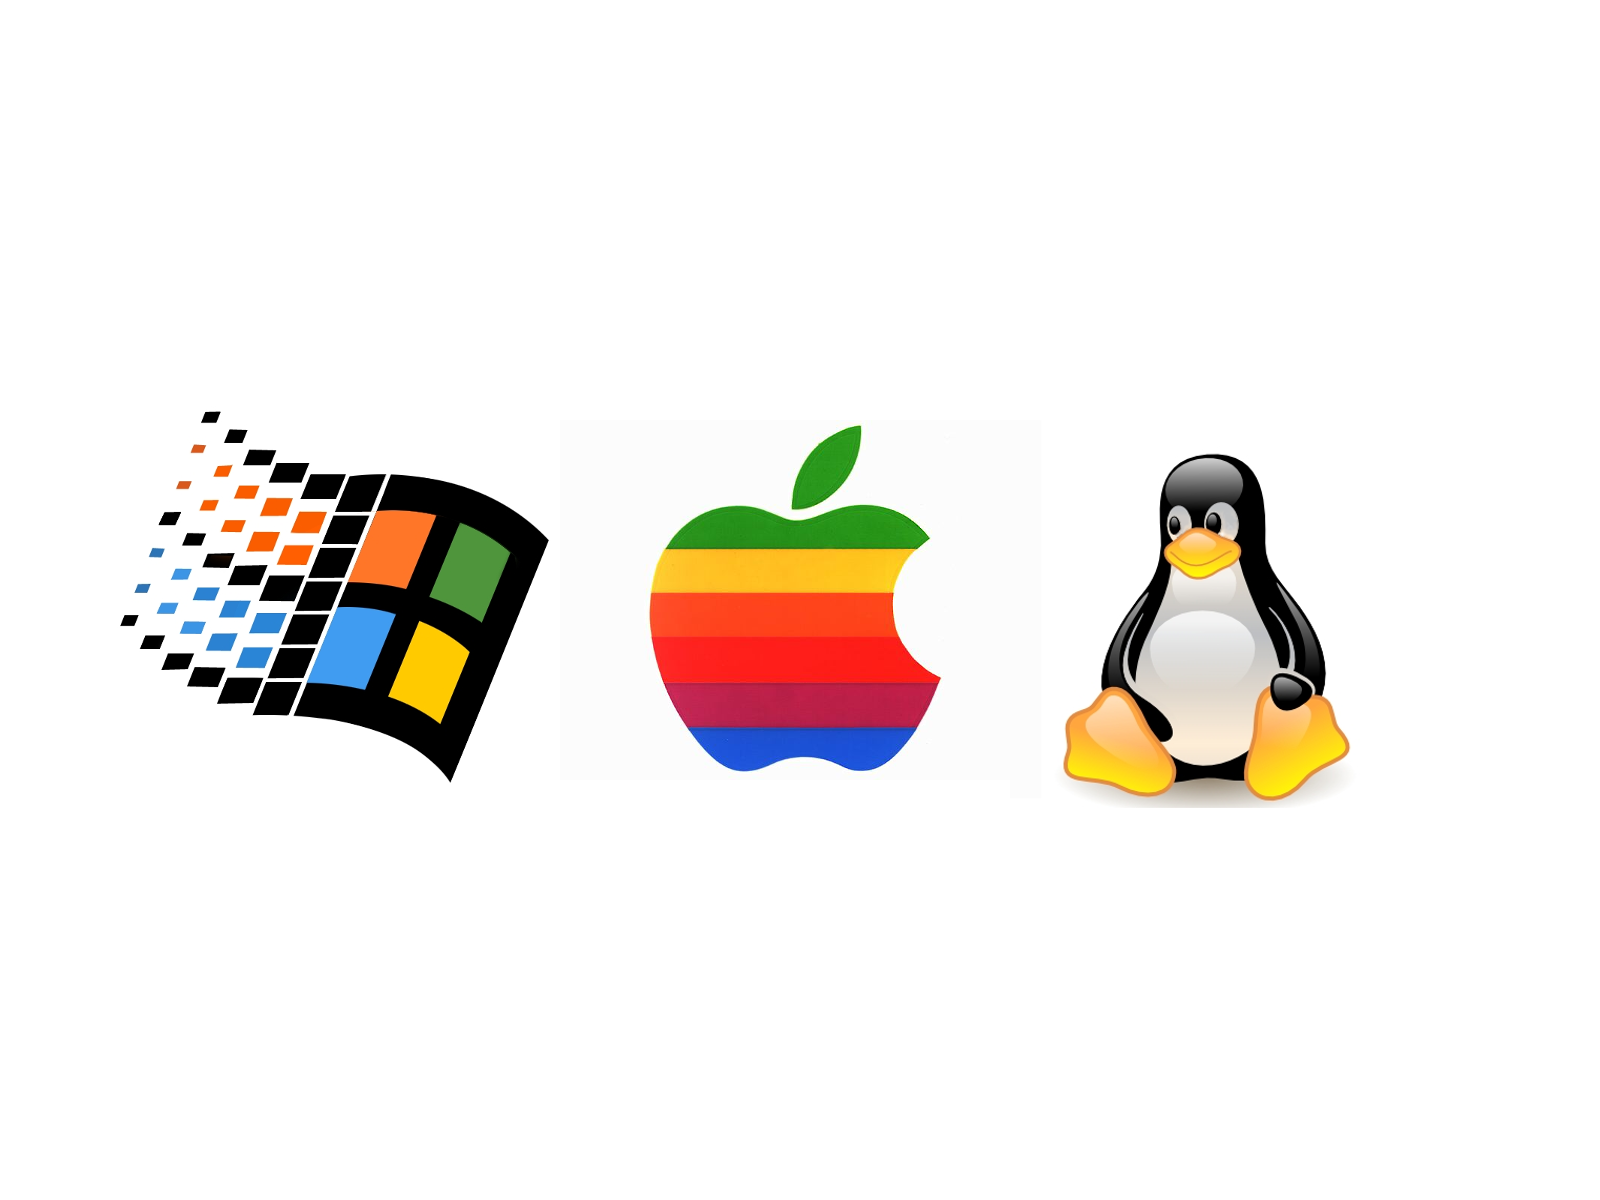 Символ операционной системы. Операционный системы линукс виндус Мак. Операциооныы есистемы. Логотипы операционных систем. Windows Macos Linux.